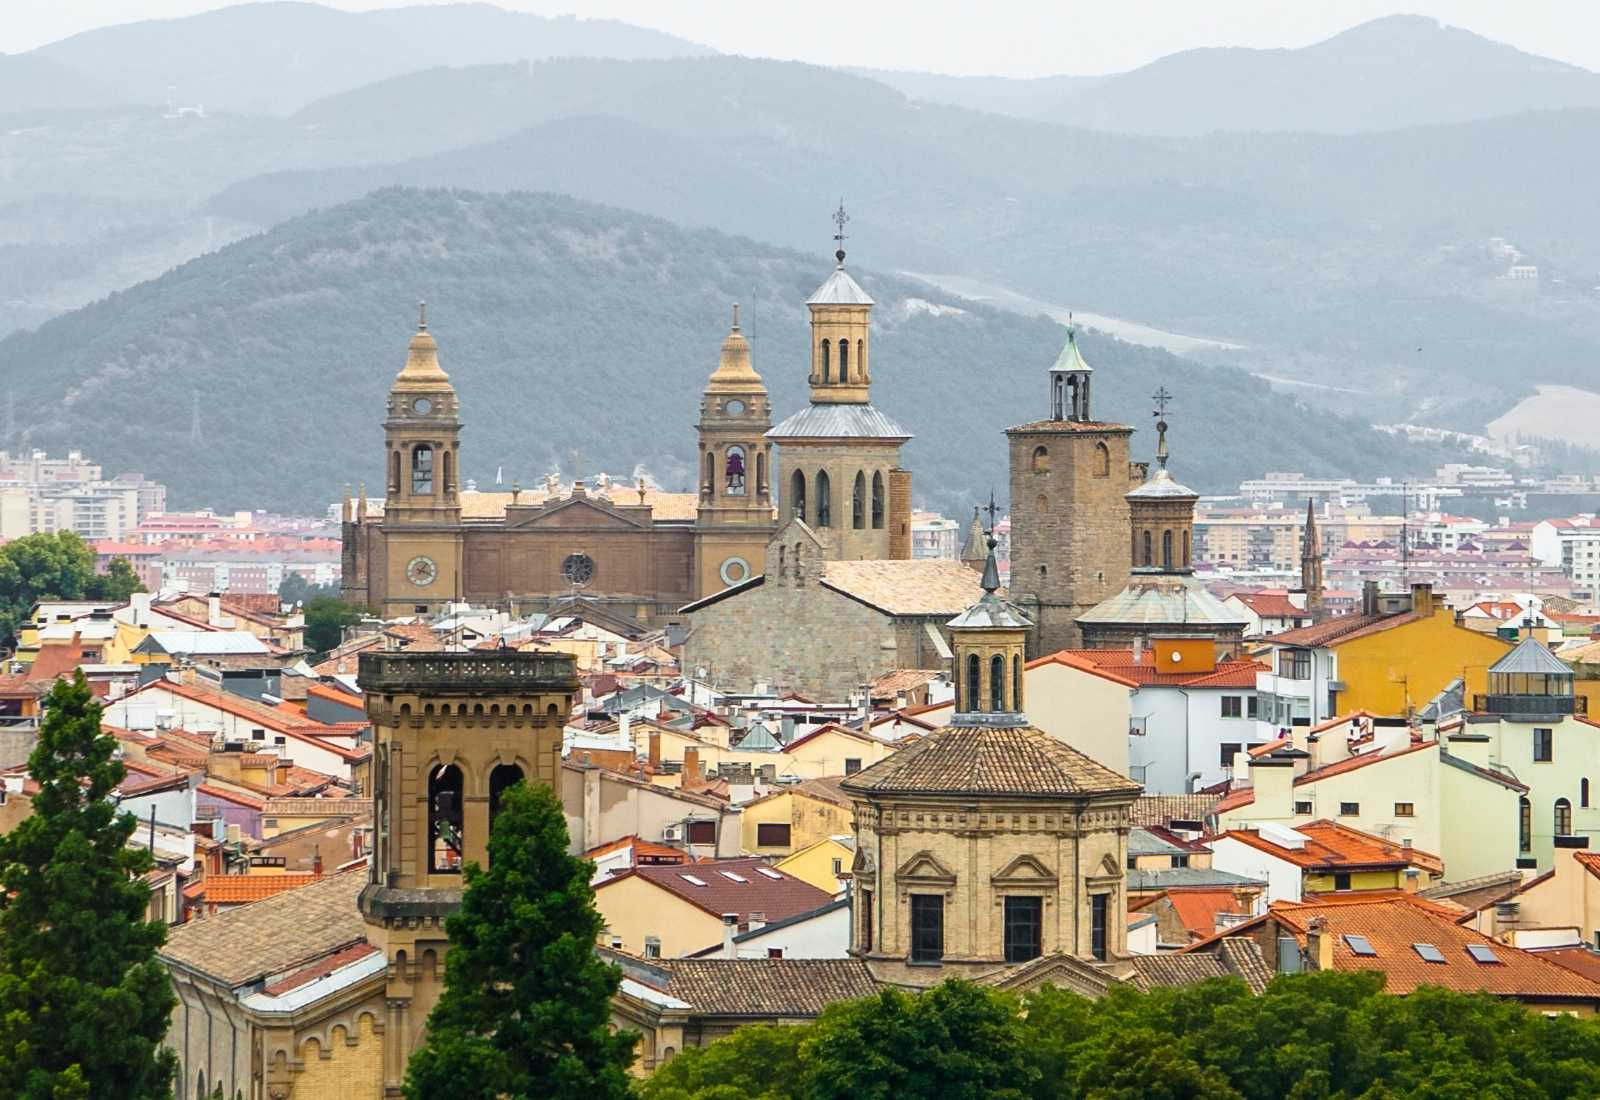 El skyline de Pamplona con sus torres eclesiásticas